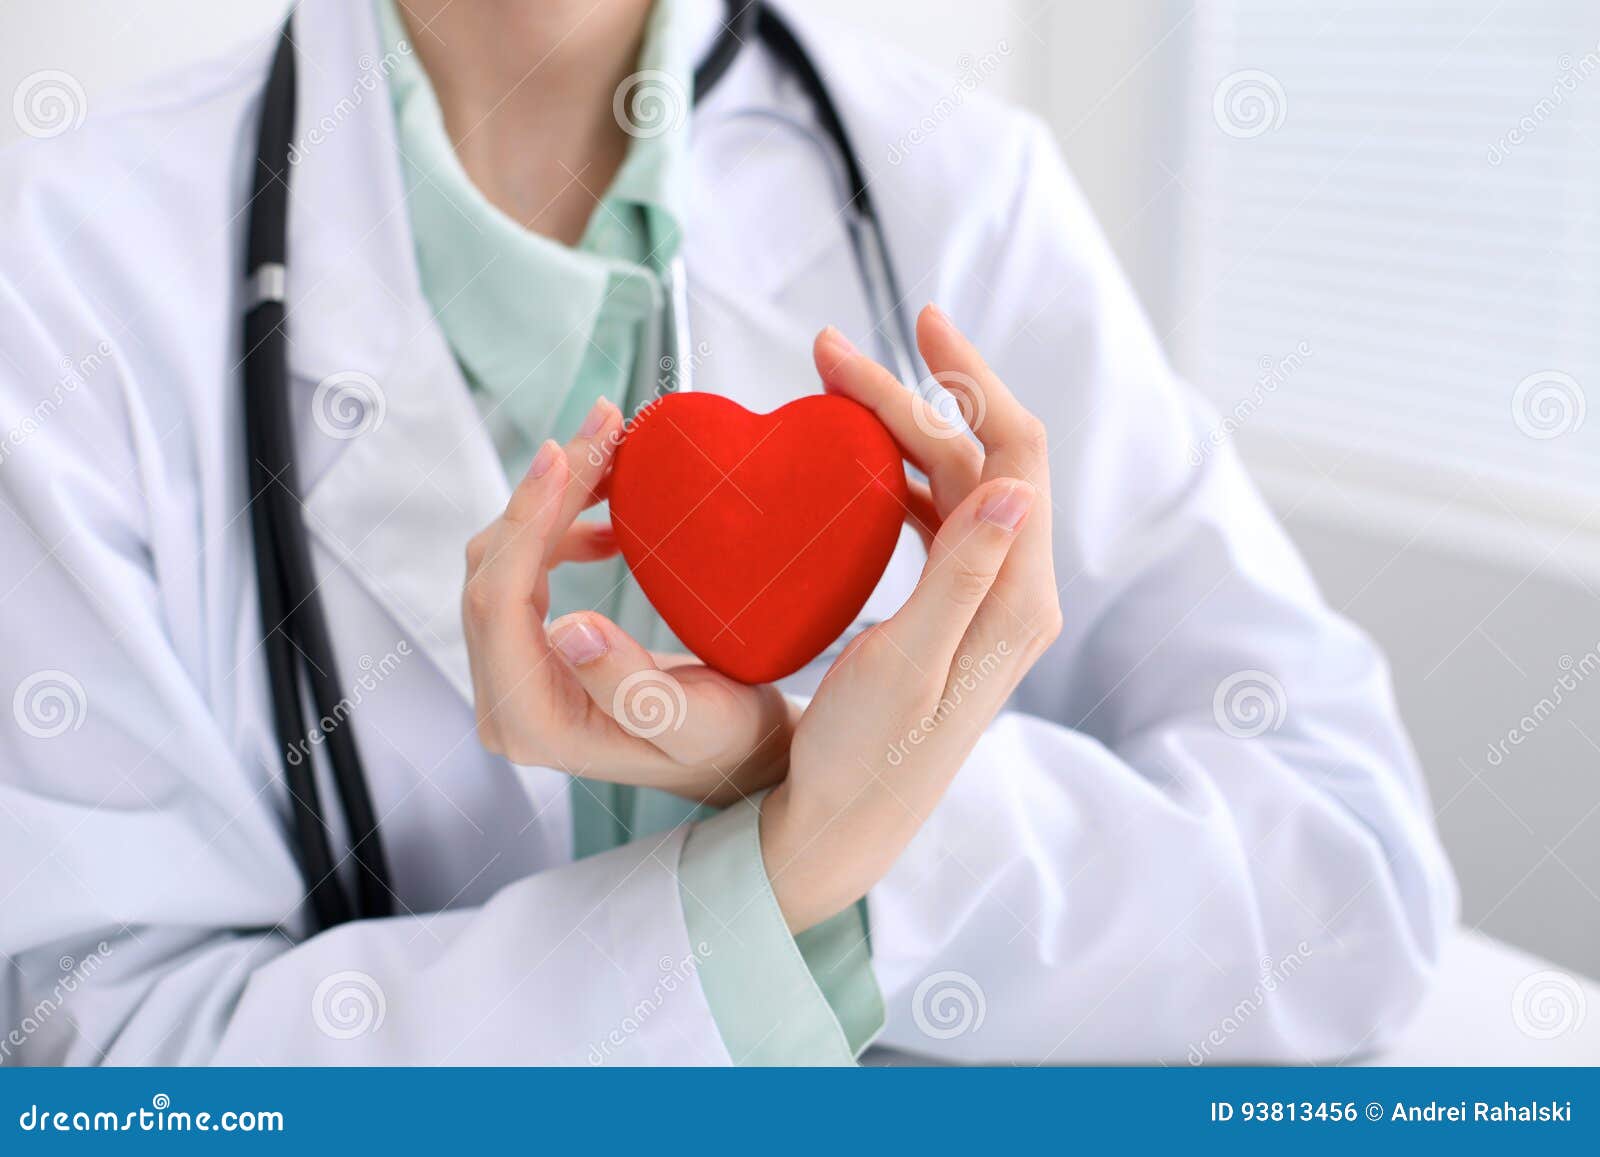 Терапия сосудистой недостаточности. Хронические заболевания сердца. Сердечно-сосудистая недостаточность. Сердечно-сосудистые заболевания у женщин.